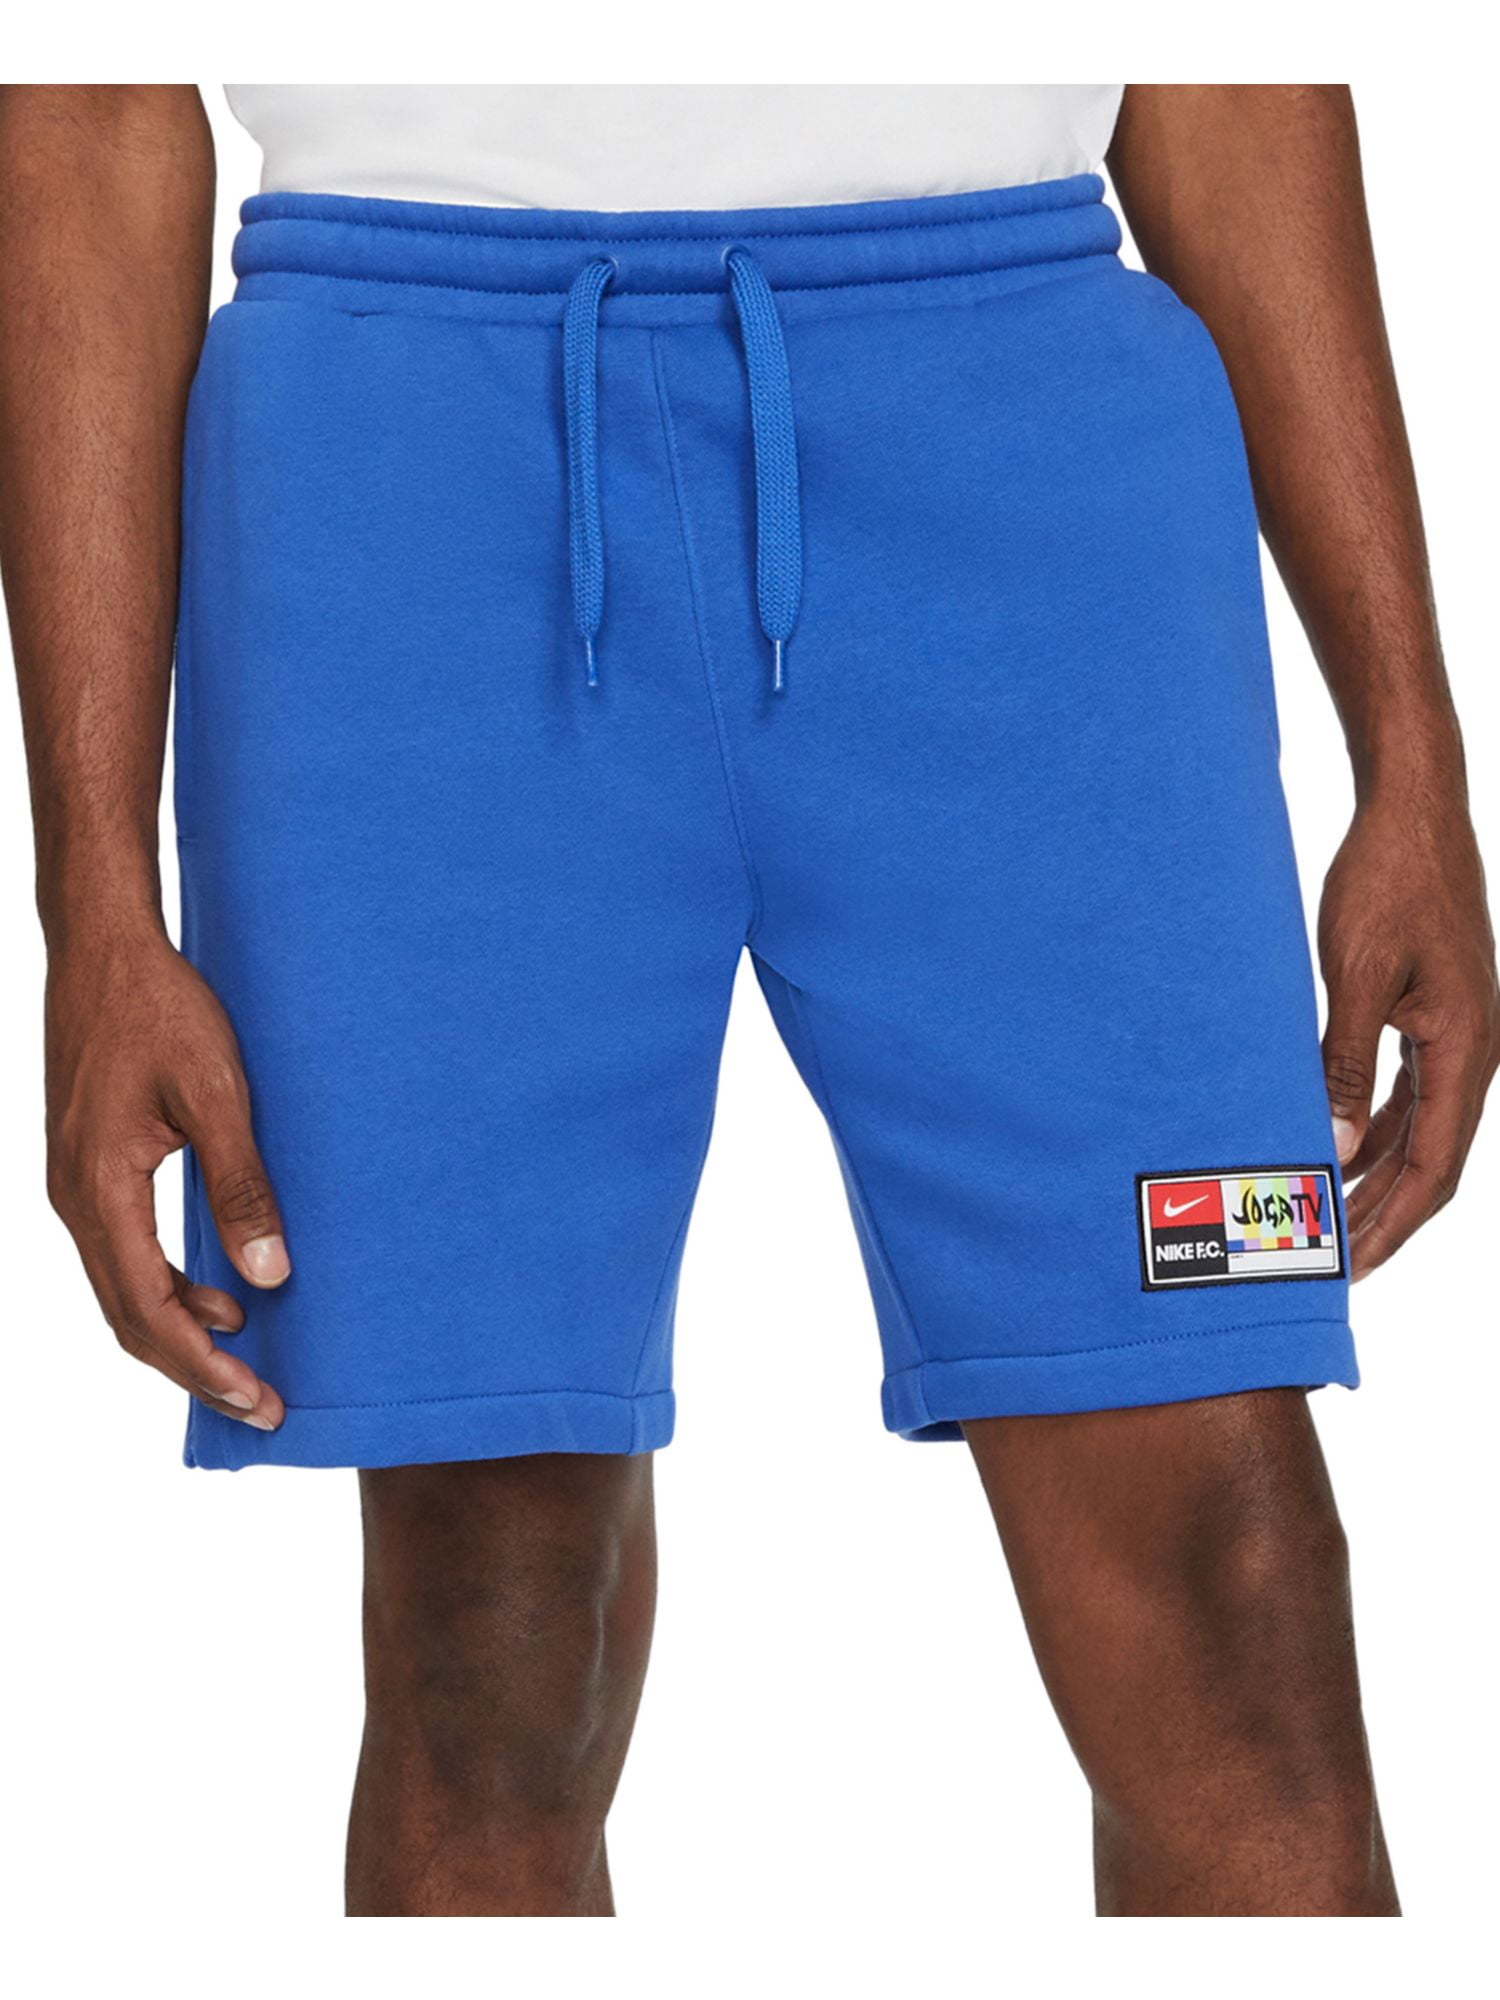 kreupel Moedig aan dubbellaag NIKE Mens Joga Bonito Blue Drawstring, Logo Graphic Classic Fit Fleece Shorts  XXL - Walmart.com